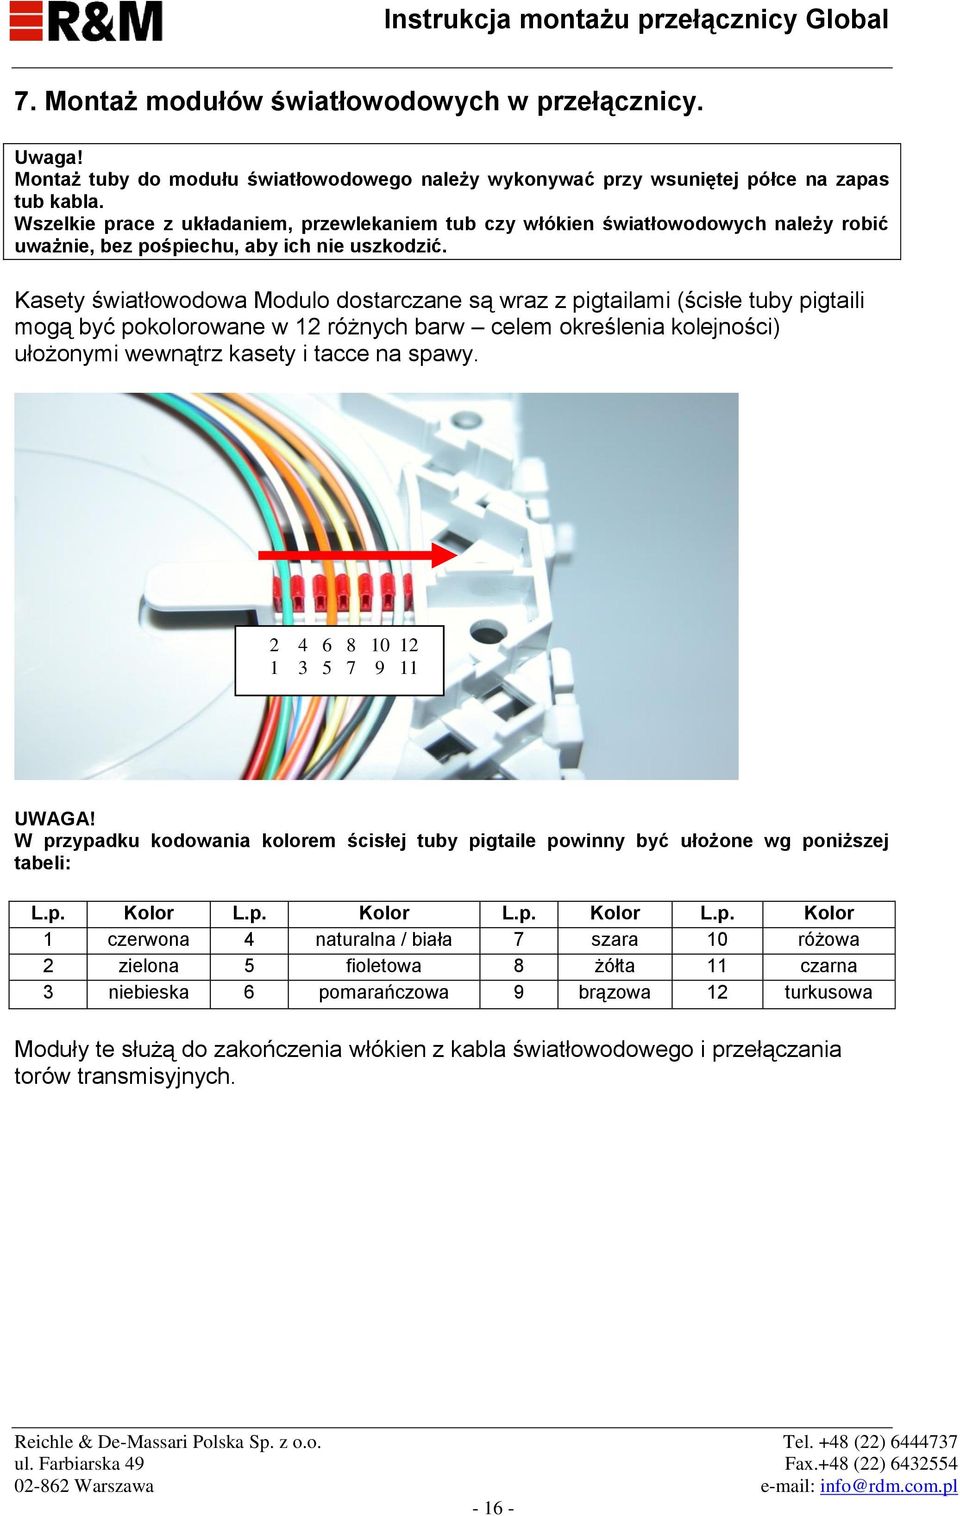 Kasety światłowodowa Modulo dostarczane są wraz z pigtailami (ścisłe tuby pigtaili mogą być pokolorowane w 12 różnych barw celem określenia kolejności) ułożonymi wewnątrz kasety i tacce na spawy.